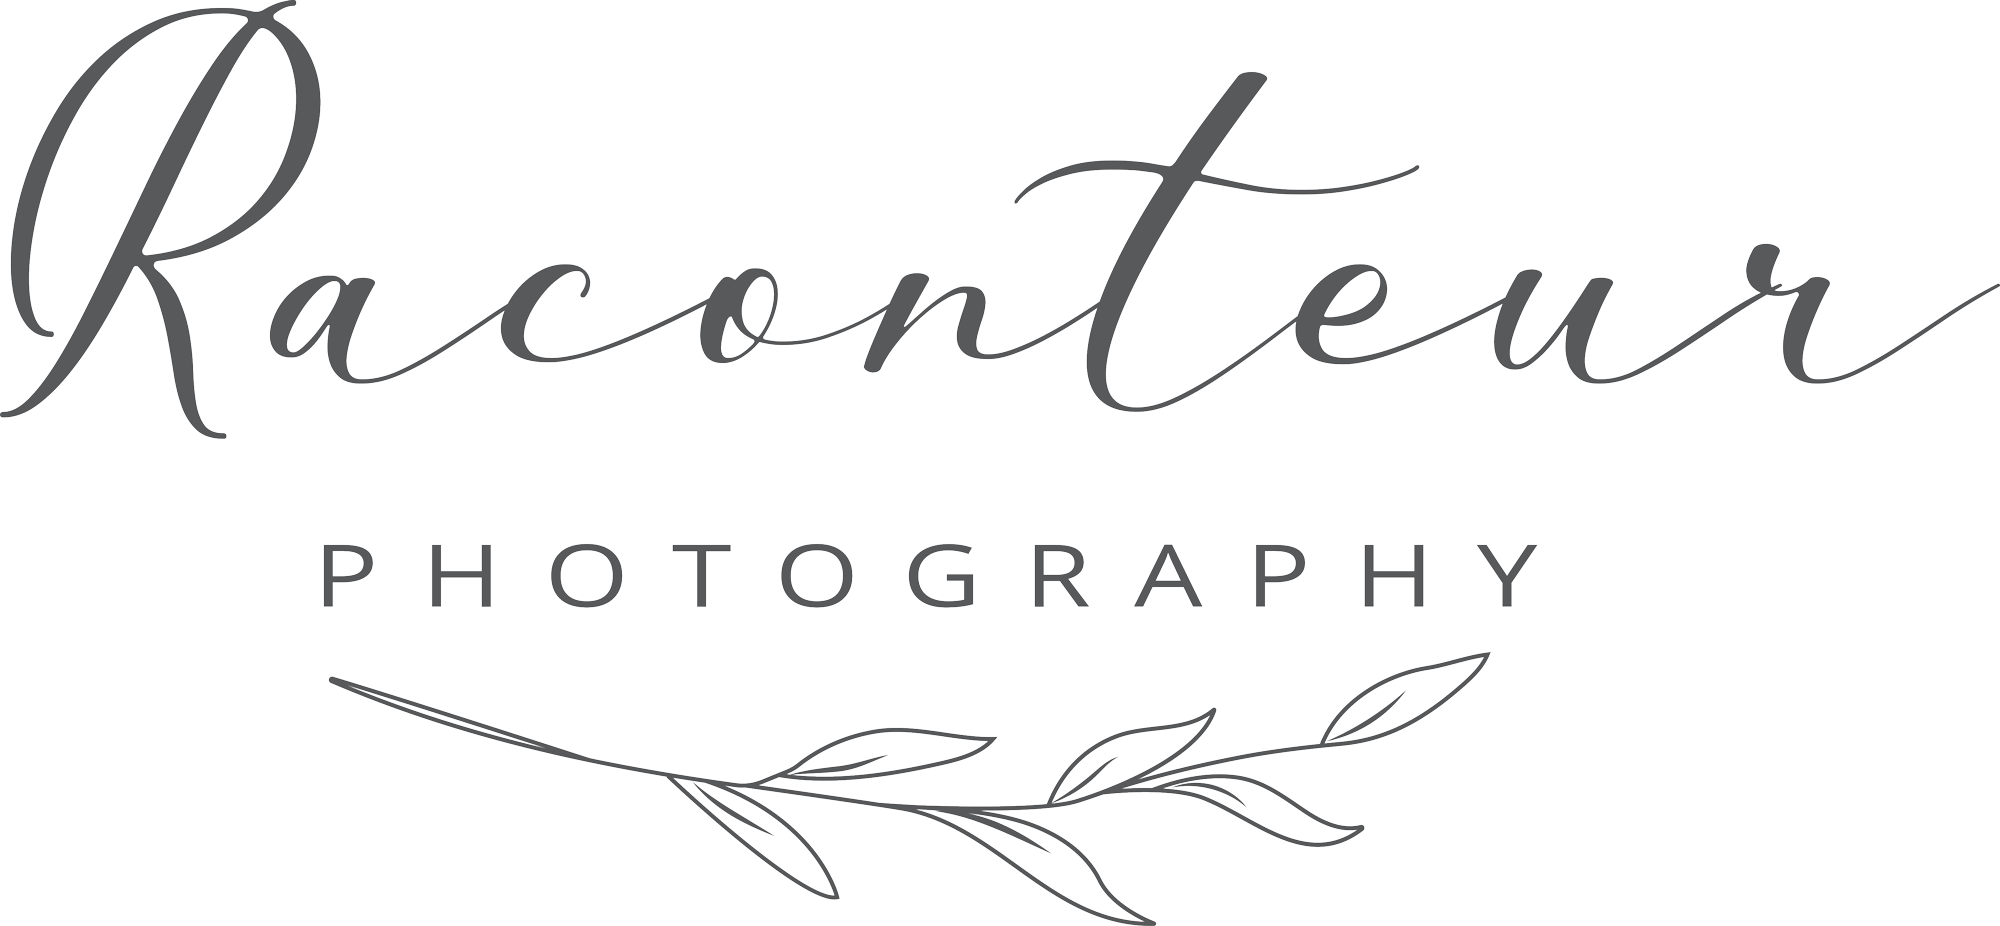 Raconteur Photography Logo